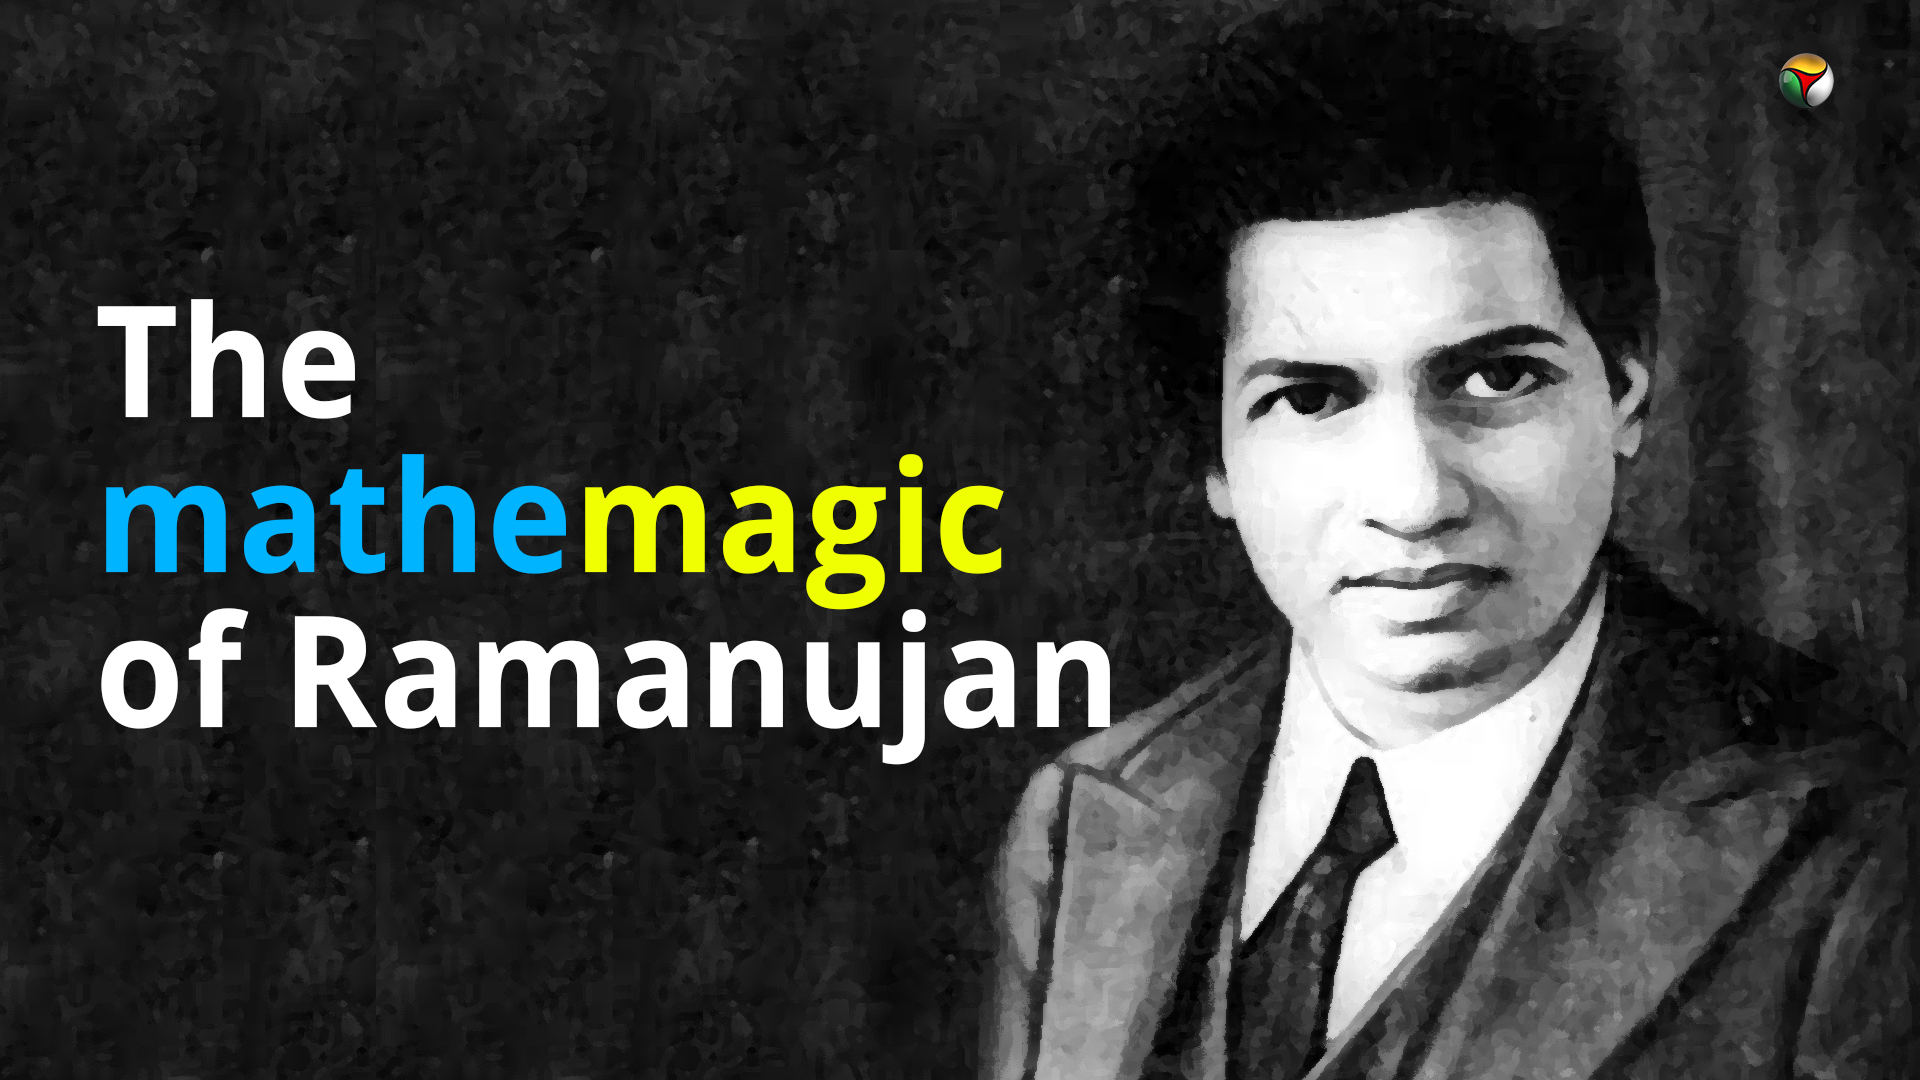 The mathemagic of Ramanujan